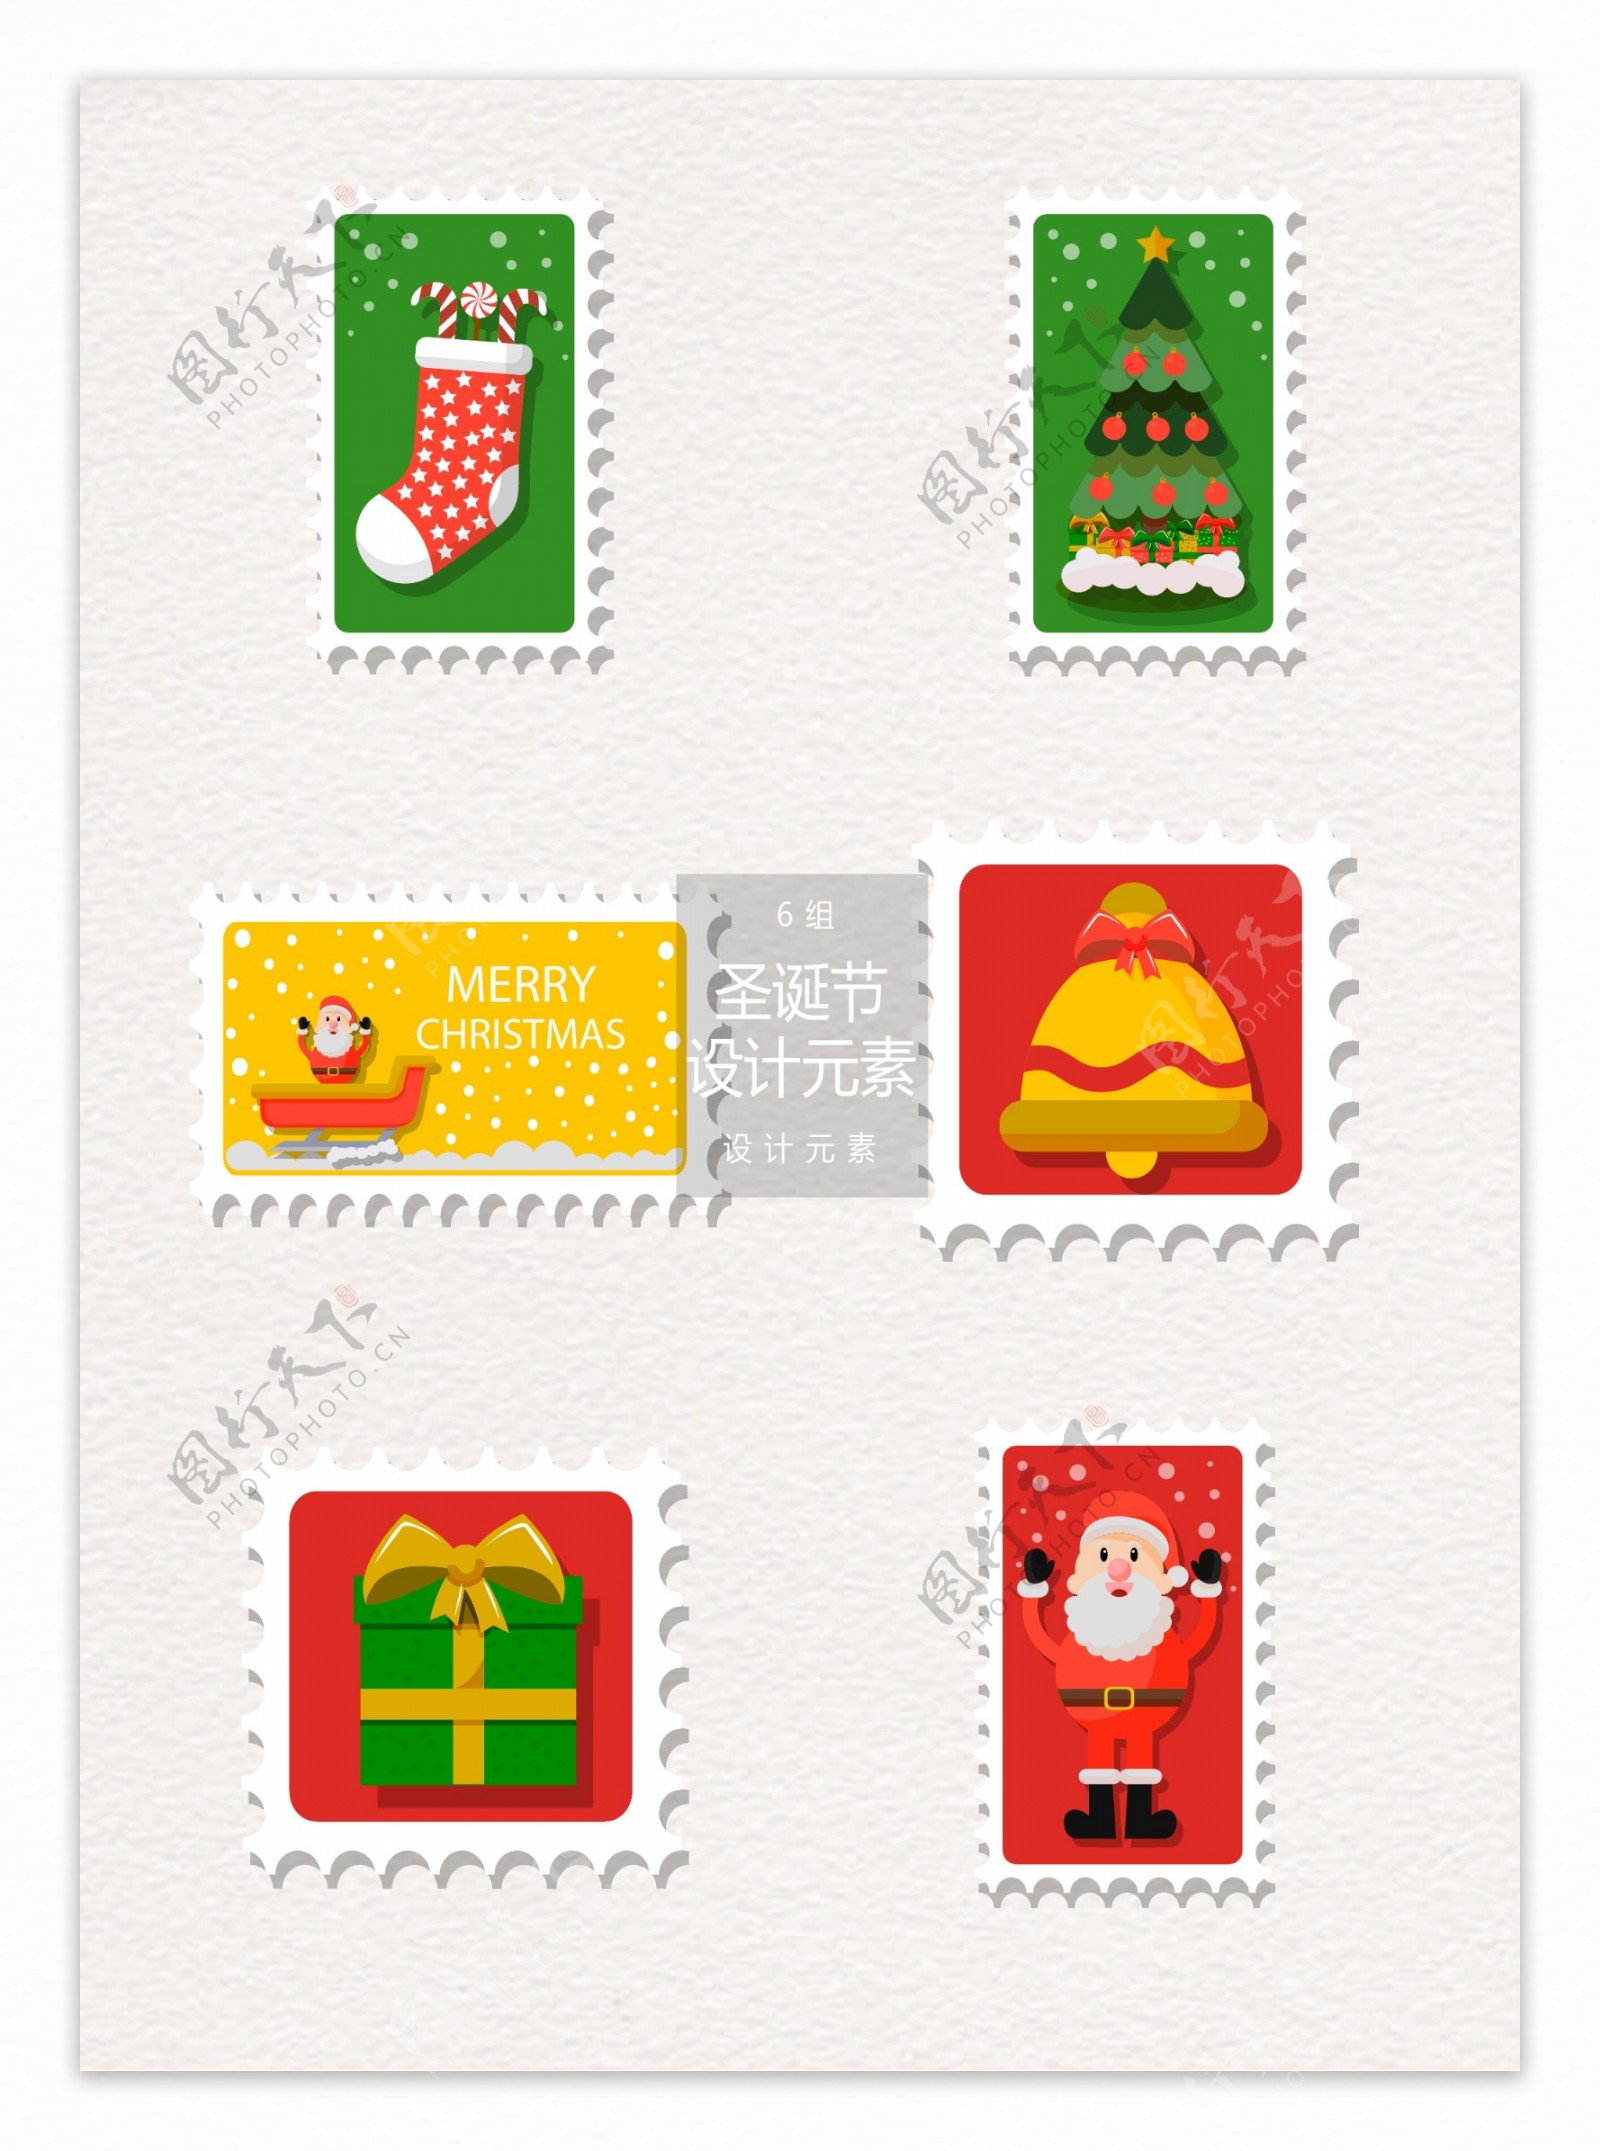 创意圣诞节邮票标签设计元素